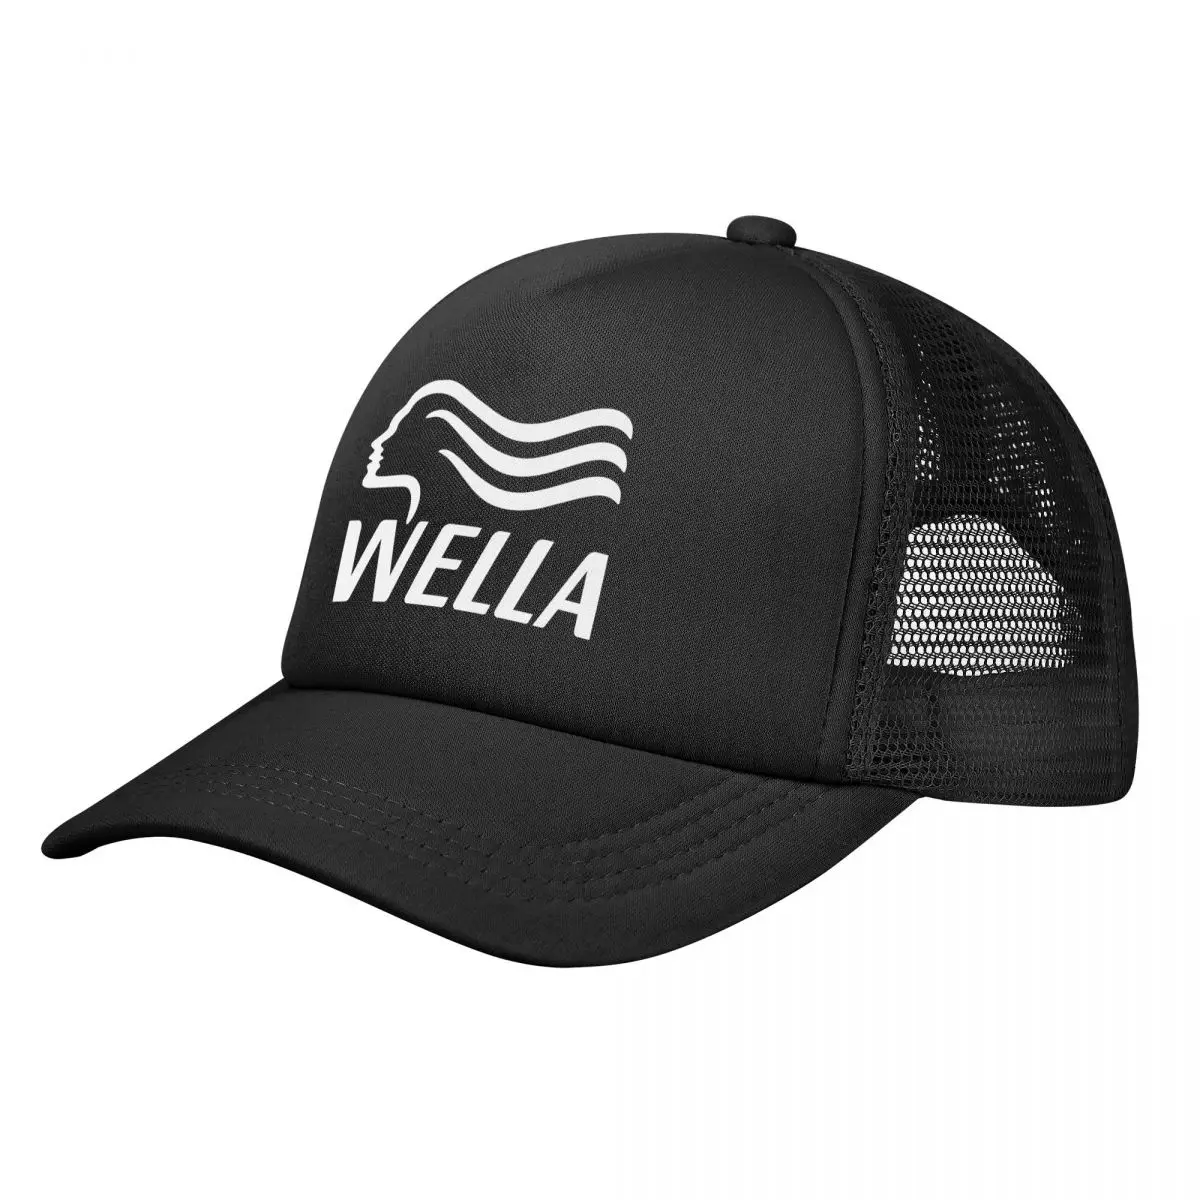 

Wella Professionals New Logo Stretchy Trucker Hat Mesh Baseball Cap Adjustable Snapback Closure Hats for Men Women Comfortable